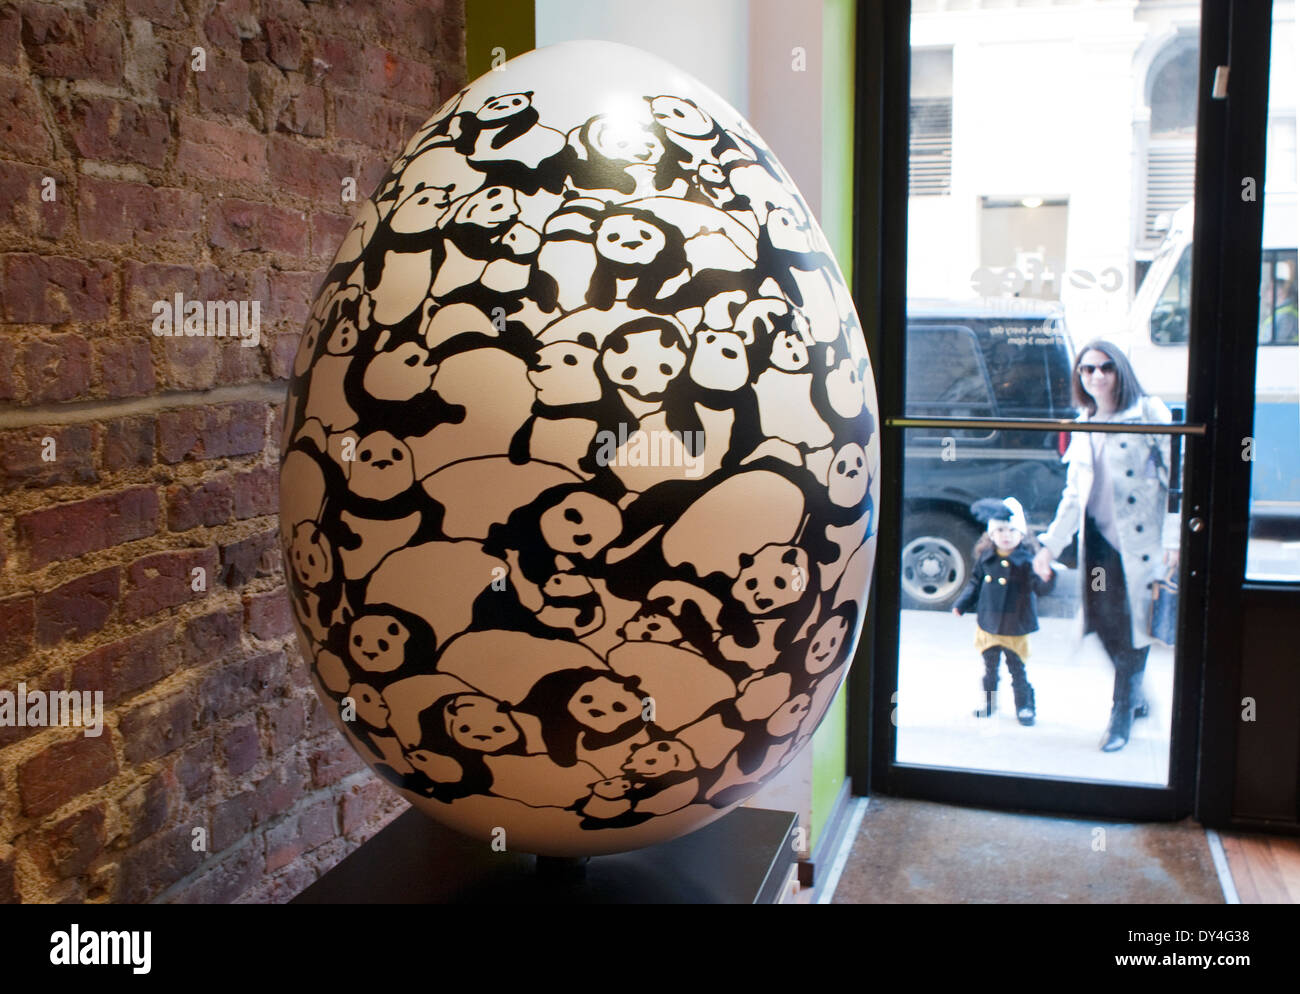 New York, NY - 6. April 2014: A Faberge-Ei, "Pandamonium", erstellt von Dot Zacharias ist angezeigt bei im Flatiron District als Bestandteil der Faberge große Eiersuche während 1-17. April (Ei #152). Dieses Ei ist eine von rund 275 von berühmten Designern erstellt und angezeigt in New York City. Die Öffentlichkeit wird aufgefordert, die Eizellen mit einer Smartphone-app für eine Chance zu gewinnen suchen. Erlös aus dem Verkauf der Eier und andere Merchandise für wohltätige Zwecke. Stockfoto